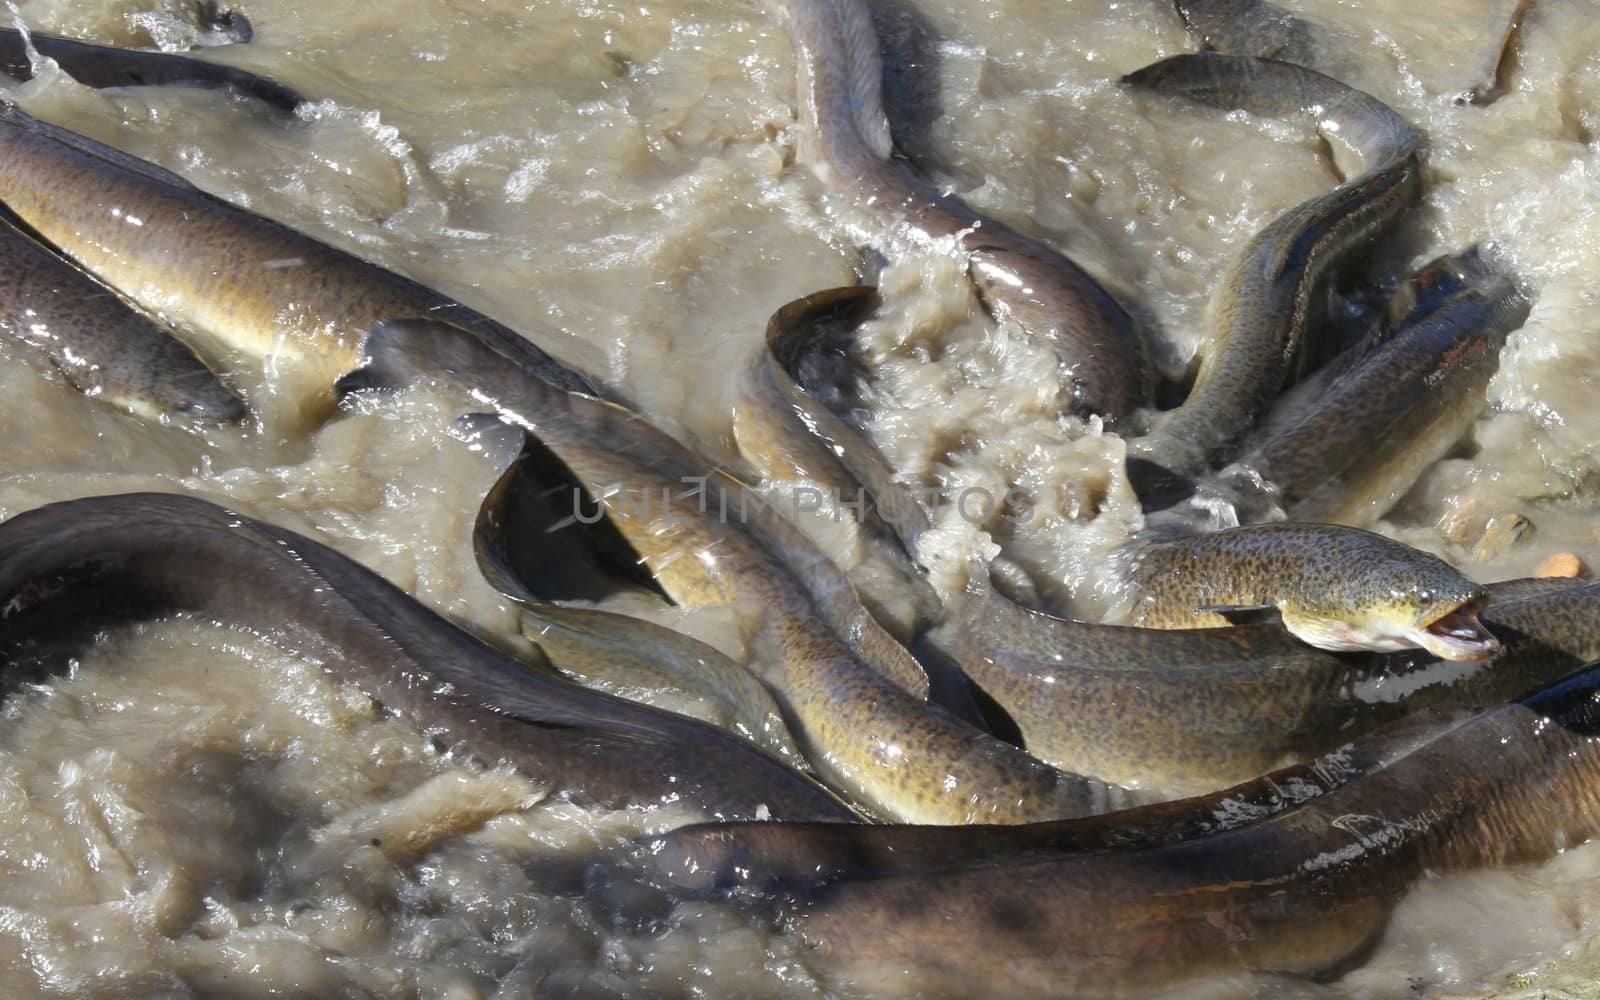 Native Australian Eels fighting over food